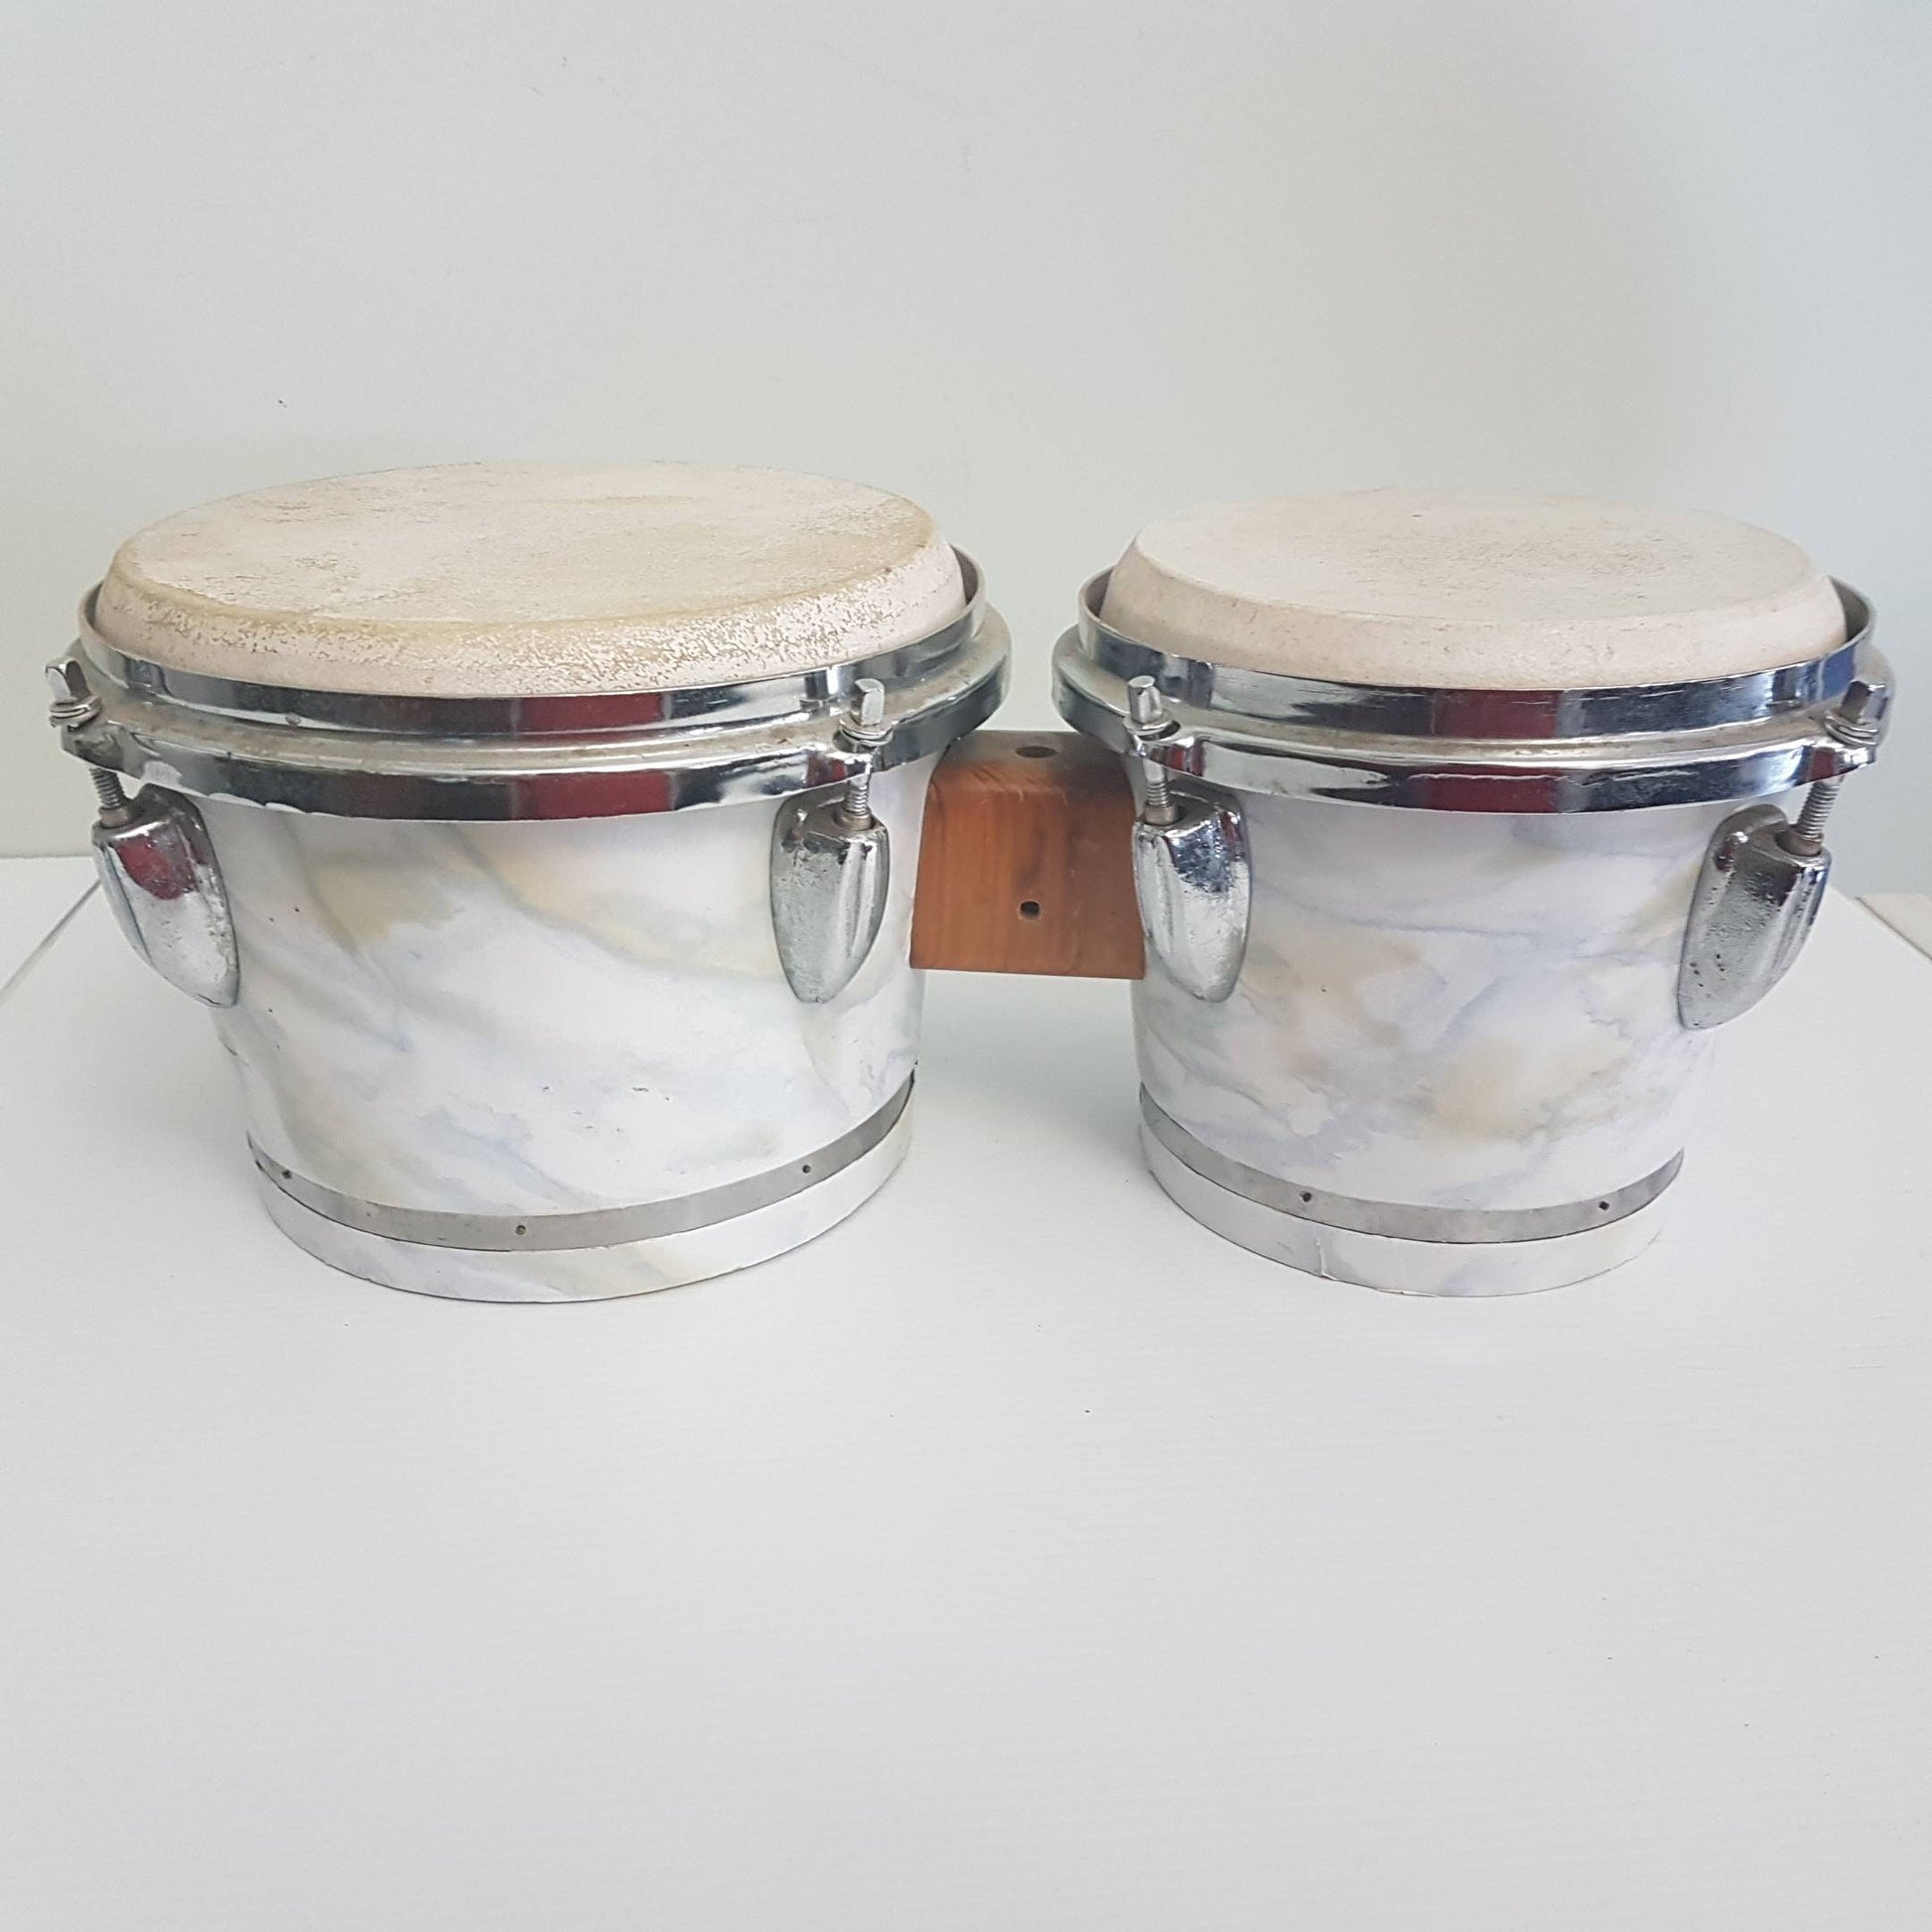 drum tam tam tambourine percussion instrument